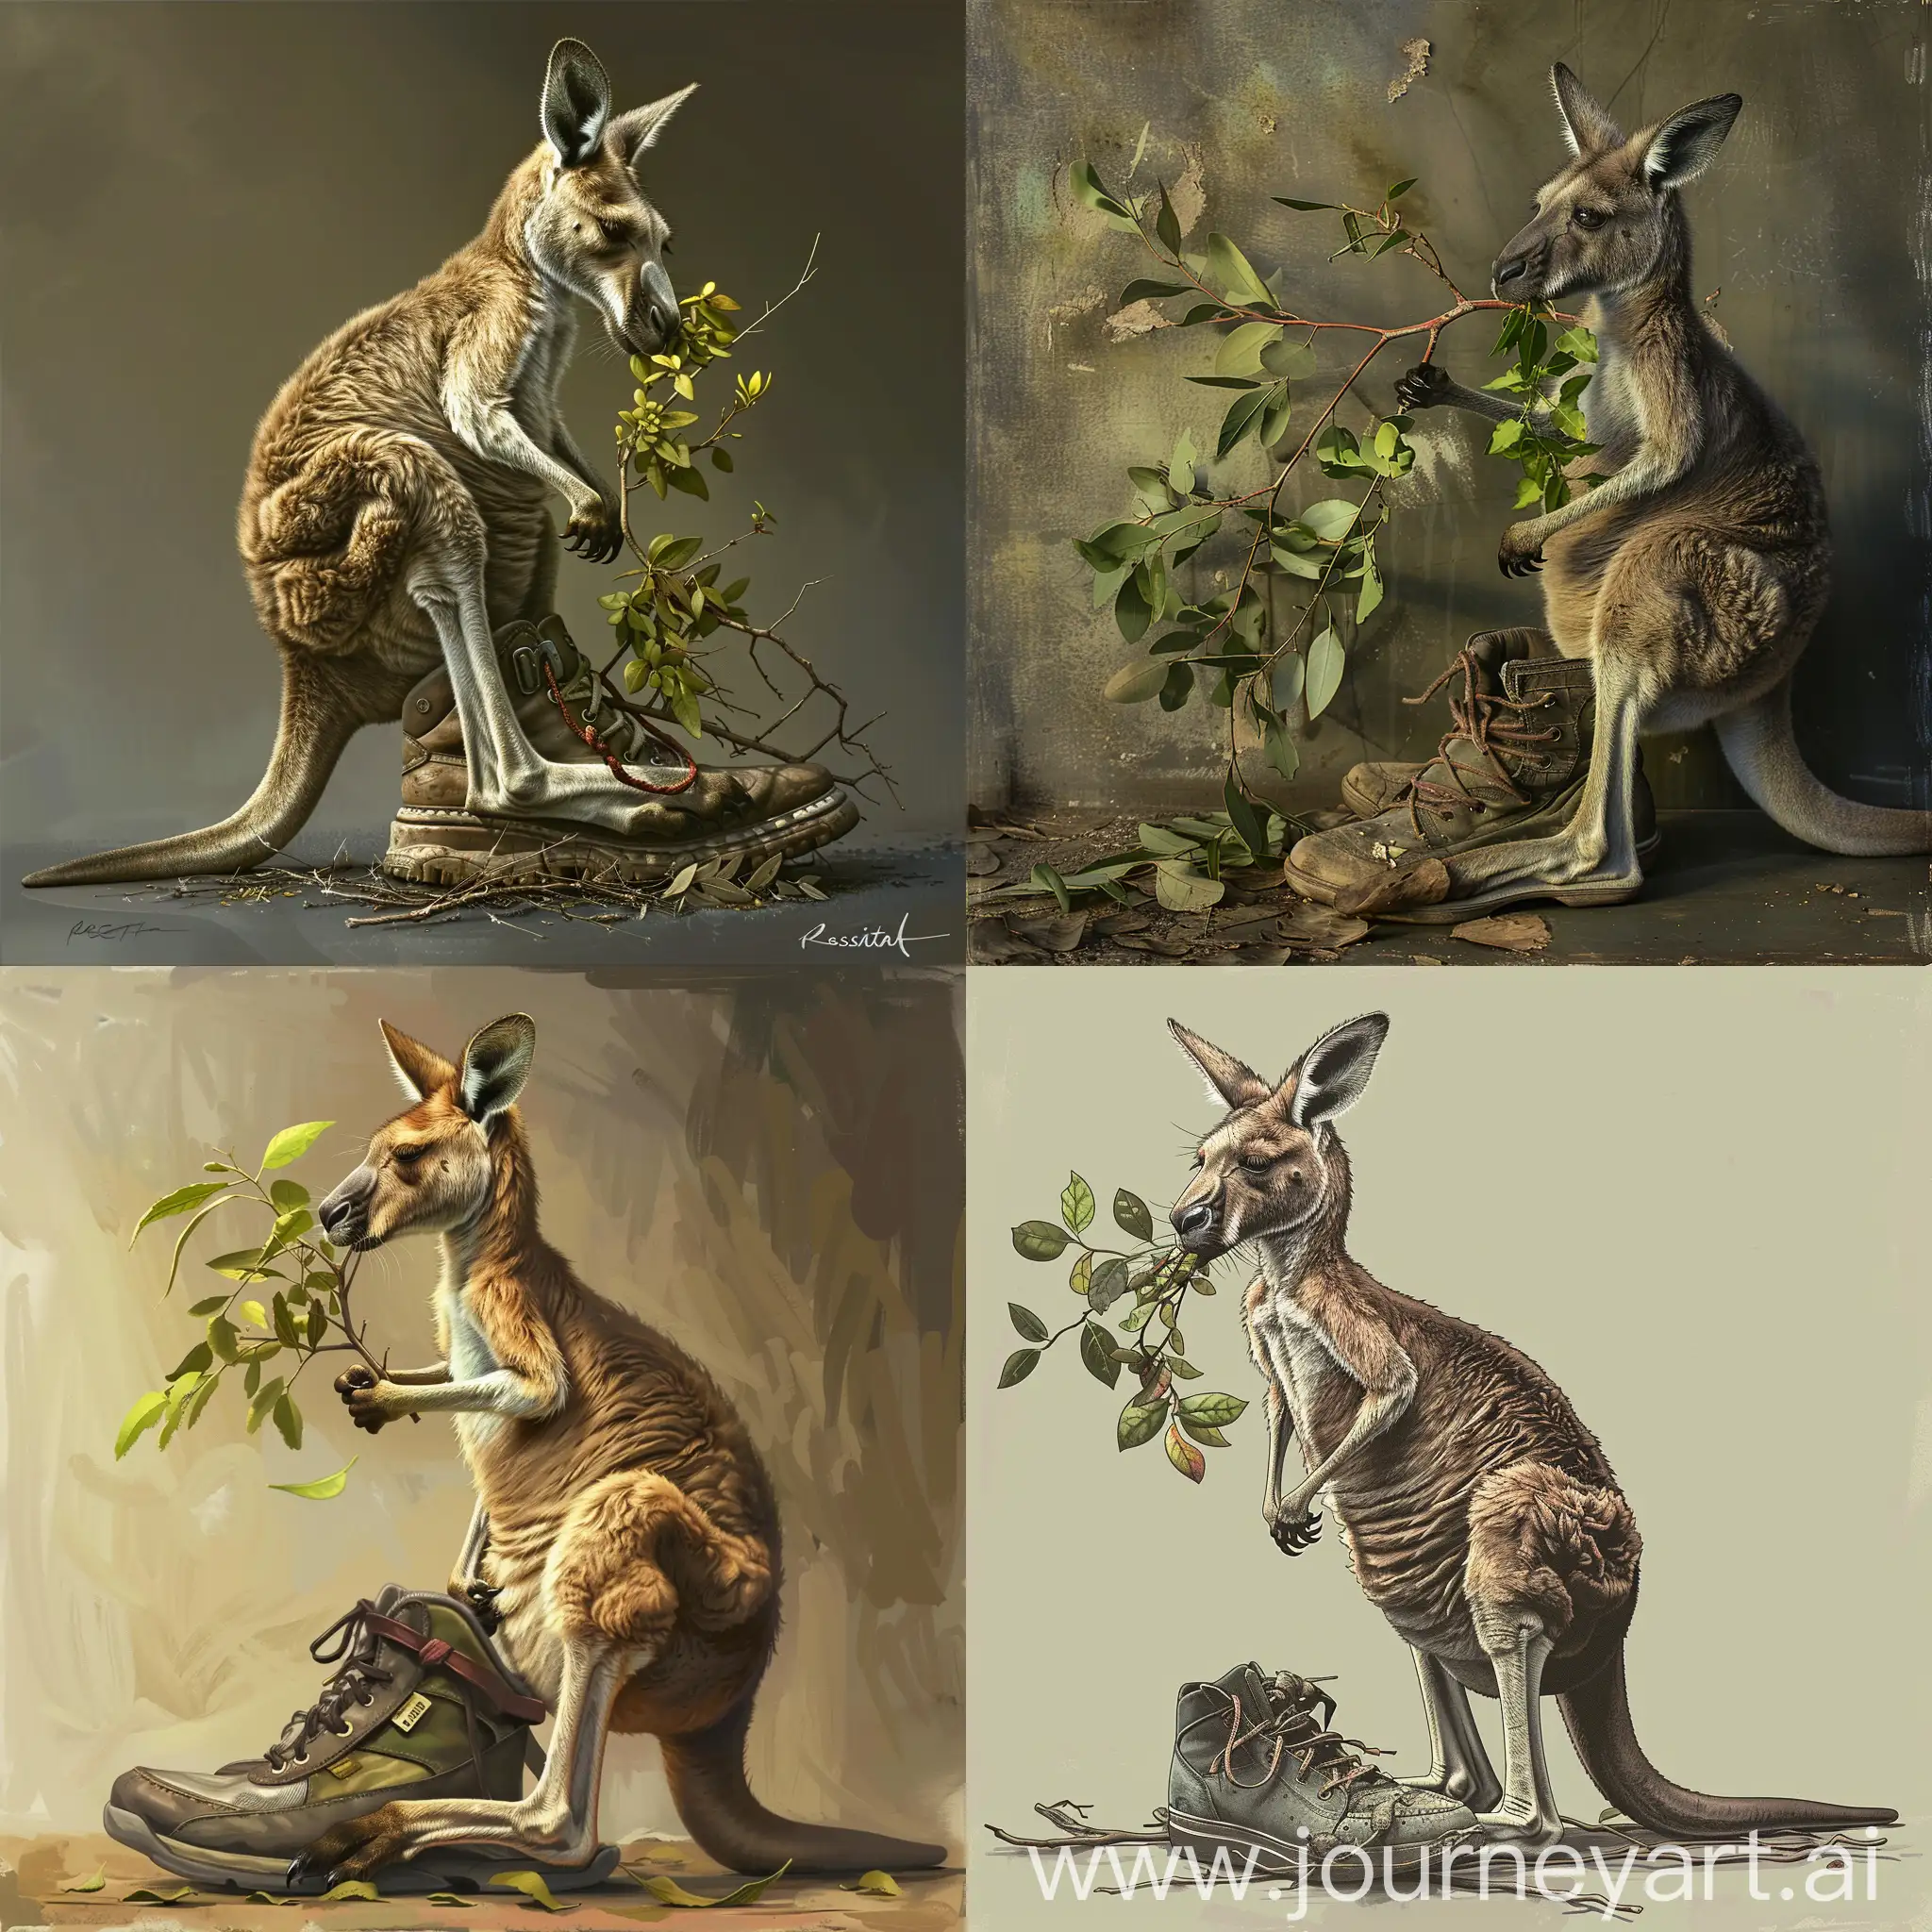 Eine Kangoroo sitzt auf einem Schuh Und isst einen Zweig mit grünen Blättern.  Rosita wachtmeister Stil